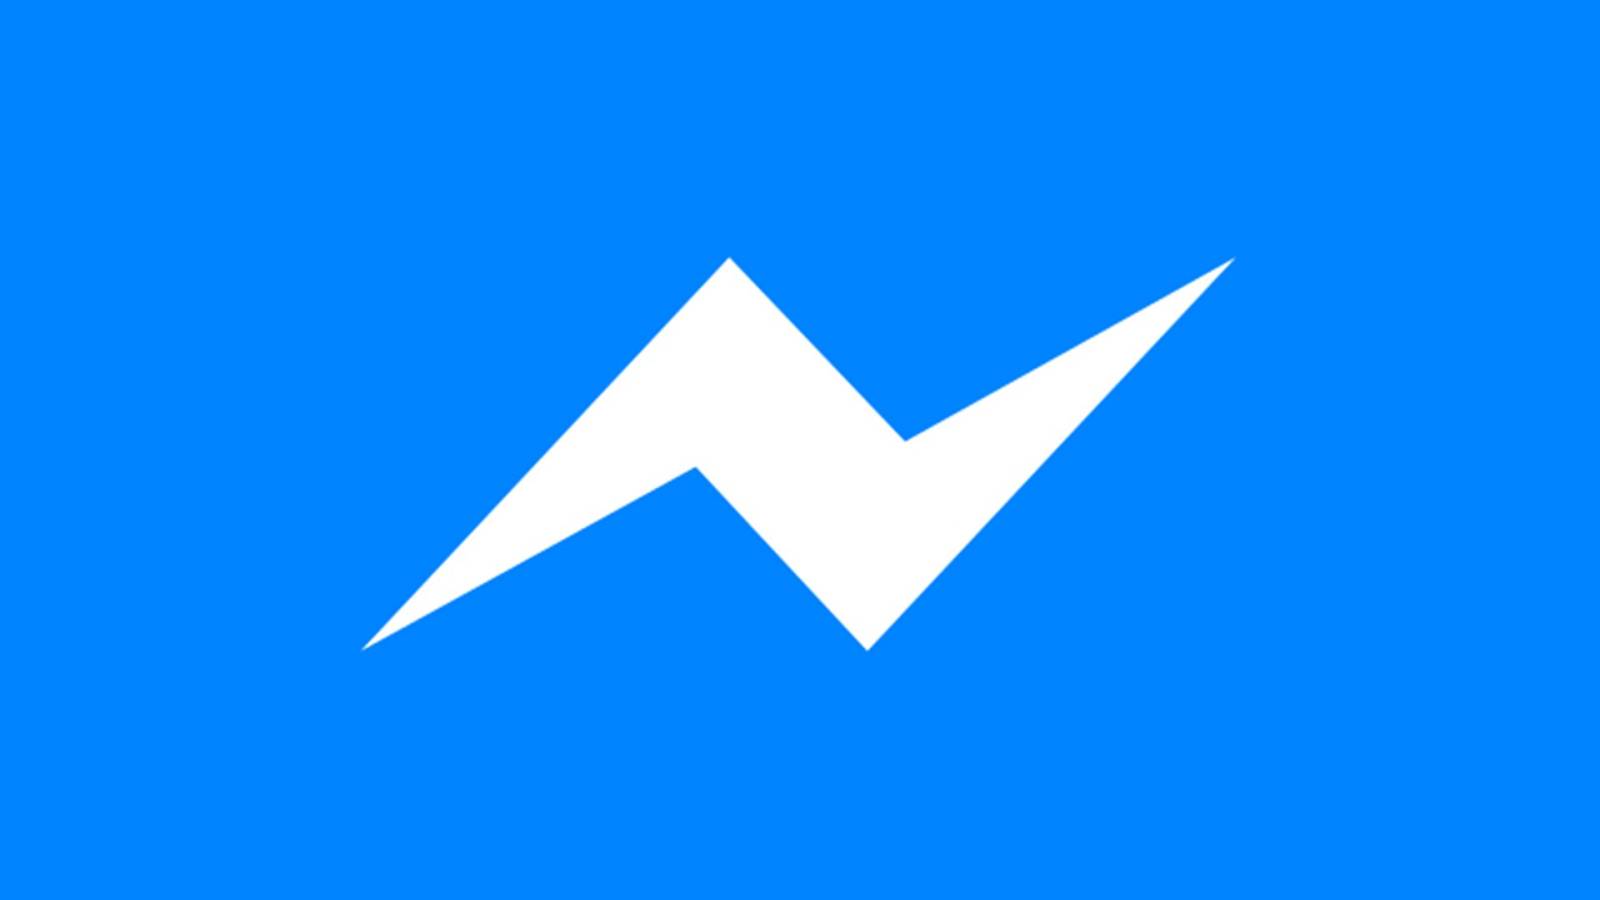 La nueva actualización de Facebook Messenger lanzada en teléfonos y tabletas